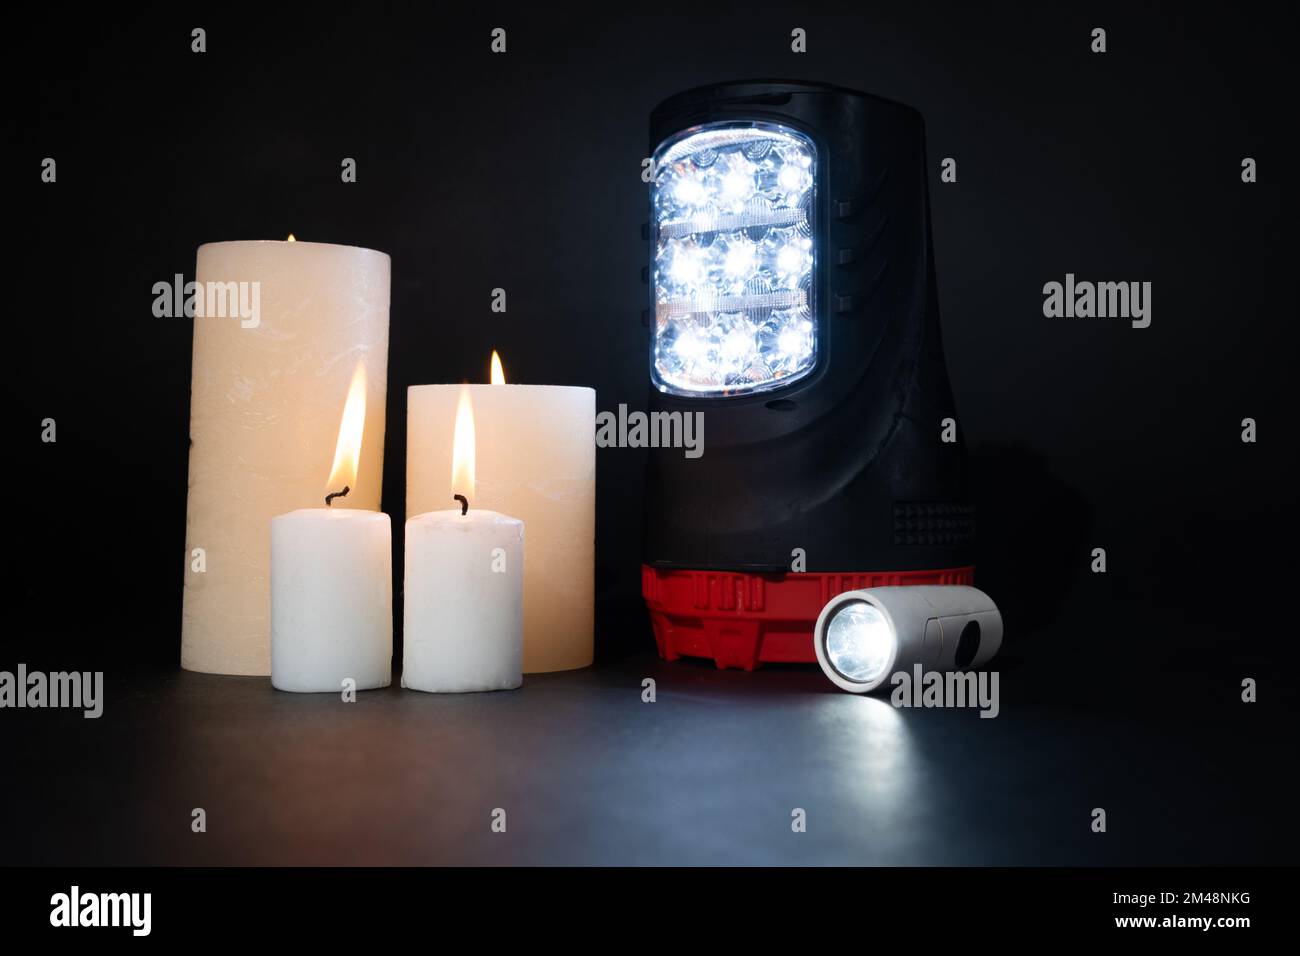 Lampes torches électriques et bougies allumées sur fond noir, sources alternatives de lumière et de chaleur Banque D'Images